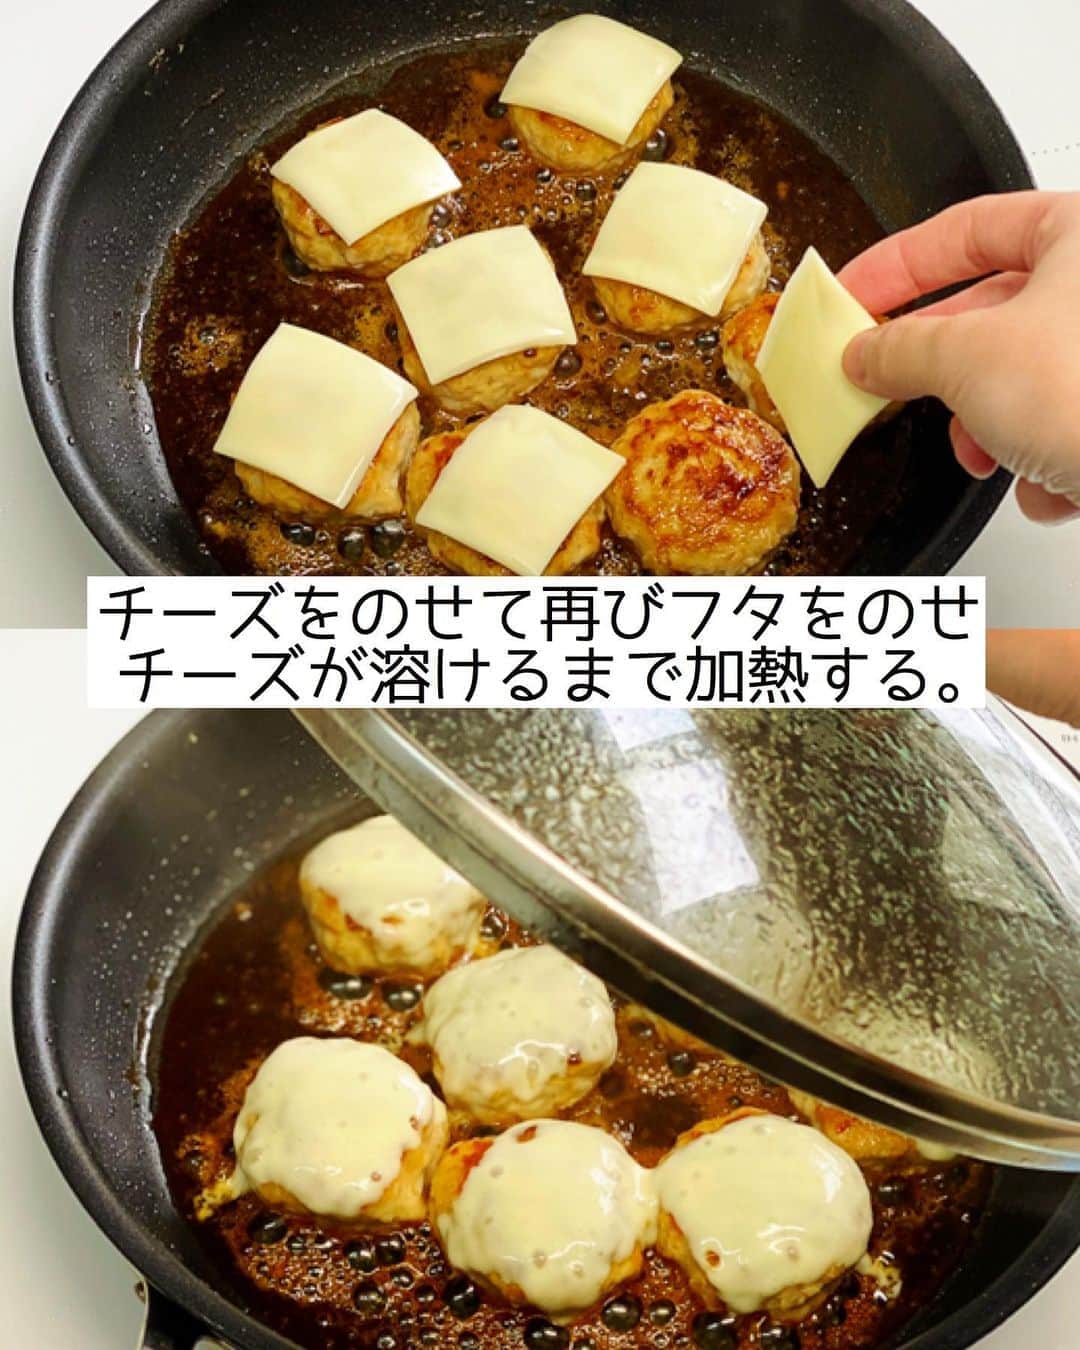 Mizuki【料理ブロガー・簡単レシピ】さんのインスタグラム写真 - (Mizuki【料理ブロガー・簡単レシピ】Instagram)「・﻿ 【#レシピ 】ーーーーーーー﻿ ♡照り焼きチーズつくね♡﻿ (2品献立提案あり)﻿ ーーーーーーーーーーーーー﻿ ﻿ ﻿ ﻿ おはようございます(*^^*)﻿ ﻿ 今日ご紹介させていただくのは﻿ みんな大好き鶏つくね♡﻿ 定番の照り焼きつくねに﻿ とろ〜りチーズをのせました♩﻿ 甘辛だれ×チーズの塩気が﻿ 相性抜群ですよー(*´艸`)﻿ ﻿ たねは一気に混ぜるだけ！の﻿ 超簡単レシピです(*^^*)﻿ よかったらお試し下さいね♩﻿ ﻿ ﻿ ﻿ ＿＿＿＿＿＿＿＿＿＿＿＿＿＿＿＿＿＿＿＿﻿ 【2〜3人分】﻿ ●鶏ひき肉...300g﻿ ●玉ねぎ(みじん切り)...1/4個﻿ ●酒...大1.5﻿ ●片栗粉...小1﻿ ●塩こしょう...少々﻿ スライスチーズ...2枚﻿ サラダ油...小1﻿ ☆醤油・みりん...各大1.5﻿ ☆砂糖...小2﻿ ﻿ 1.ボウルに●を入れてよく混ぜ、8等分の小判形にする。スライスチーズは4等分に切る。☆は合わせておく。﻿ 2.フライパンにサラダ油を中火で熱し、1のたねを焼く。焼き色が付いたら裏返し、フタをして弱めの中火で2分半蒸し焼きにする。﻿ 3.☆を加えて煮からめ、チーズをのせて再びフタをのせ、チーズが溶けるまで加熱する。﻿ ￣￣￣￣￣￣￣￣￣￣￣￣￣￣￣￣￣￣￣￣﻿ ﻿ ﻿ ﻿ 《ポイント》﻿ ♦︎成形する時は手を水で濡らしておくとくっつきません♩﻿ ♦︎チーズはピザ用チーズでもOK♩﻿ ﻿ ﻿ ﻿ ﻿ ﻿ ﻿ ﻿ ＿＿＿＿＿＿＿＿＿＿＿＿＿＿＿﻿ 🥣🥣🥣2品献立提案🥣🥣🥣﻿ ￣￣￣￣￣￣￣￣￣￣￣￣￣￣￣﻿ 【合間に作れるおすすめ副菜】﻿ >レンコンとツナの和風和え(P.100)﻿ >にんじんマカロニサラダ(P.89)﻿ (#Mizukiの2品献立 より)﻿ ﻿ 【献立の段取り】﻿ 副菜をレンジに入れてからメインを焼く🥢﻿ ﻿ ﻿ ﻿ ﻿ ﻿ ﻿ ﻿ ⭐️発売中⭐️3刷重版が決まりました😭﻿ 本当にありがとうございます(涙)﻿ _____________________________________﻿ \15分でいただきます/﻿ 📕#Mizukiの2品献立 📕﻿ (9月24日発売・マガジンハウス)﻿ ￣￣￣￣￣￣￣￣￣￣￣￣￣￣￣￣￣﻿ ﻿ 忙しい私たちには﻿ 2品くらいがちょうどいい！﻿ 『しんどくない献立、考えました』﻿ ￣￣￣￣￣￣￣￣￣￣￣￣￣￣￣￣﻿ ﻿ ーーーーーPART.1 ーーーーー﻿ 【Mizukiのお墨つき！２品献立ベスト10】﻿ 約15分でできる10献立をご紹介！﻿ メインは全部フライパン、副菜はレンチンor混ぜるだけ♡﻿ ﻿ ーーーーーPART.2 ーーーーー﻿ 【フライパンひとつ！今夜のメインおかず】﻿ 献立の主役になる肉や魚のおかず50品！﻿ Part3の副菜と組み合わせれば﻿ 献立のバリエーションが広がりますよ♩﻿ ﻿ ーーーーー PART.3 ーーーーー﻿ 【合間に作れる！ 野菜別かんたん副菜】﻿ レンチンor和えるだけの副菜レシピを﻿ 素材別にたっぷり収録♩﻿ ﻿ ーーーーー番外編ーーーーー﻿ 【ひとつで満足！ご飯＆麺】﻿ 【具だくさん！おかずスープ】﻿ 【オーブンいらずのおやつレシピ】﻿ ￣￣￣￣￣￣￣￣￣￣￣￣￣￣￣￣￣￣﻿ (ハイライトにリンク🔗あります💗)﻿ ﻿ ﻿ ﻿ ﻿ ﻿ ﻿ レシピを作って下さった際や﻿ レシピ本についてのご投稿には﻿ タグ付け( @mizuki_31cafe )して﻿ お知らせいただけると嬉しいです😊💕﻿ ﻿ ﻿ ﻿ ﻿ ﻿ ﻿ #鶏つくね#つくね#チーズ#甘辛#Mizuki#簡単レシピ#時短レシピ#節約レシピ#料理#フーディーテーブル#マカロニメイト#おうちごはん#デリスタグラマー#料理好きな人と繋がりたい#食べ物#料理記録#おうちごはんlover#写真好きな人と繋がりたい#foodpic#cooking#recipe#lin_stagrammer#foodporn#yummy#f52grams#照り焼きチーズつくねm」10月23日 7時24分 - mizuki_31cafe